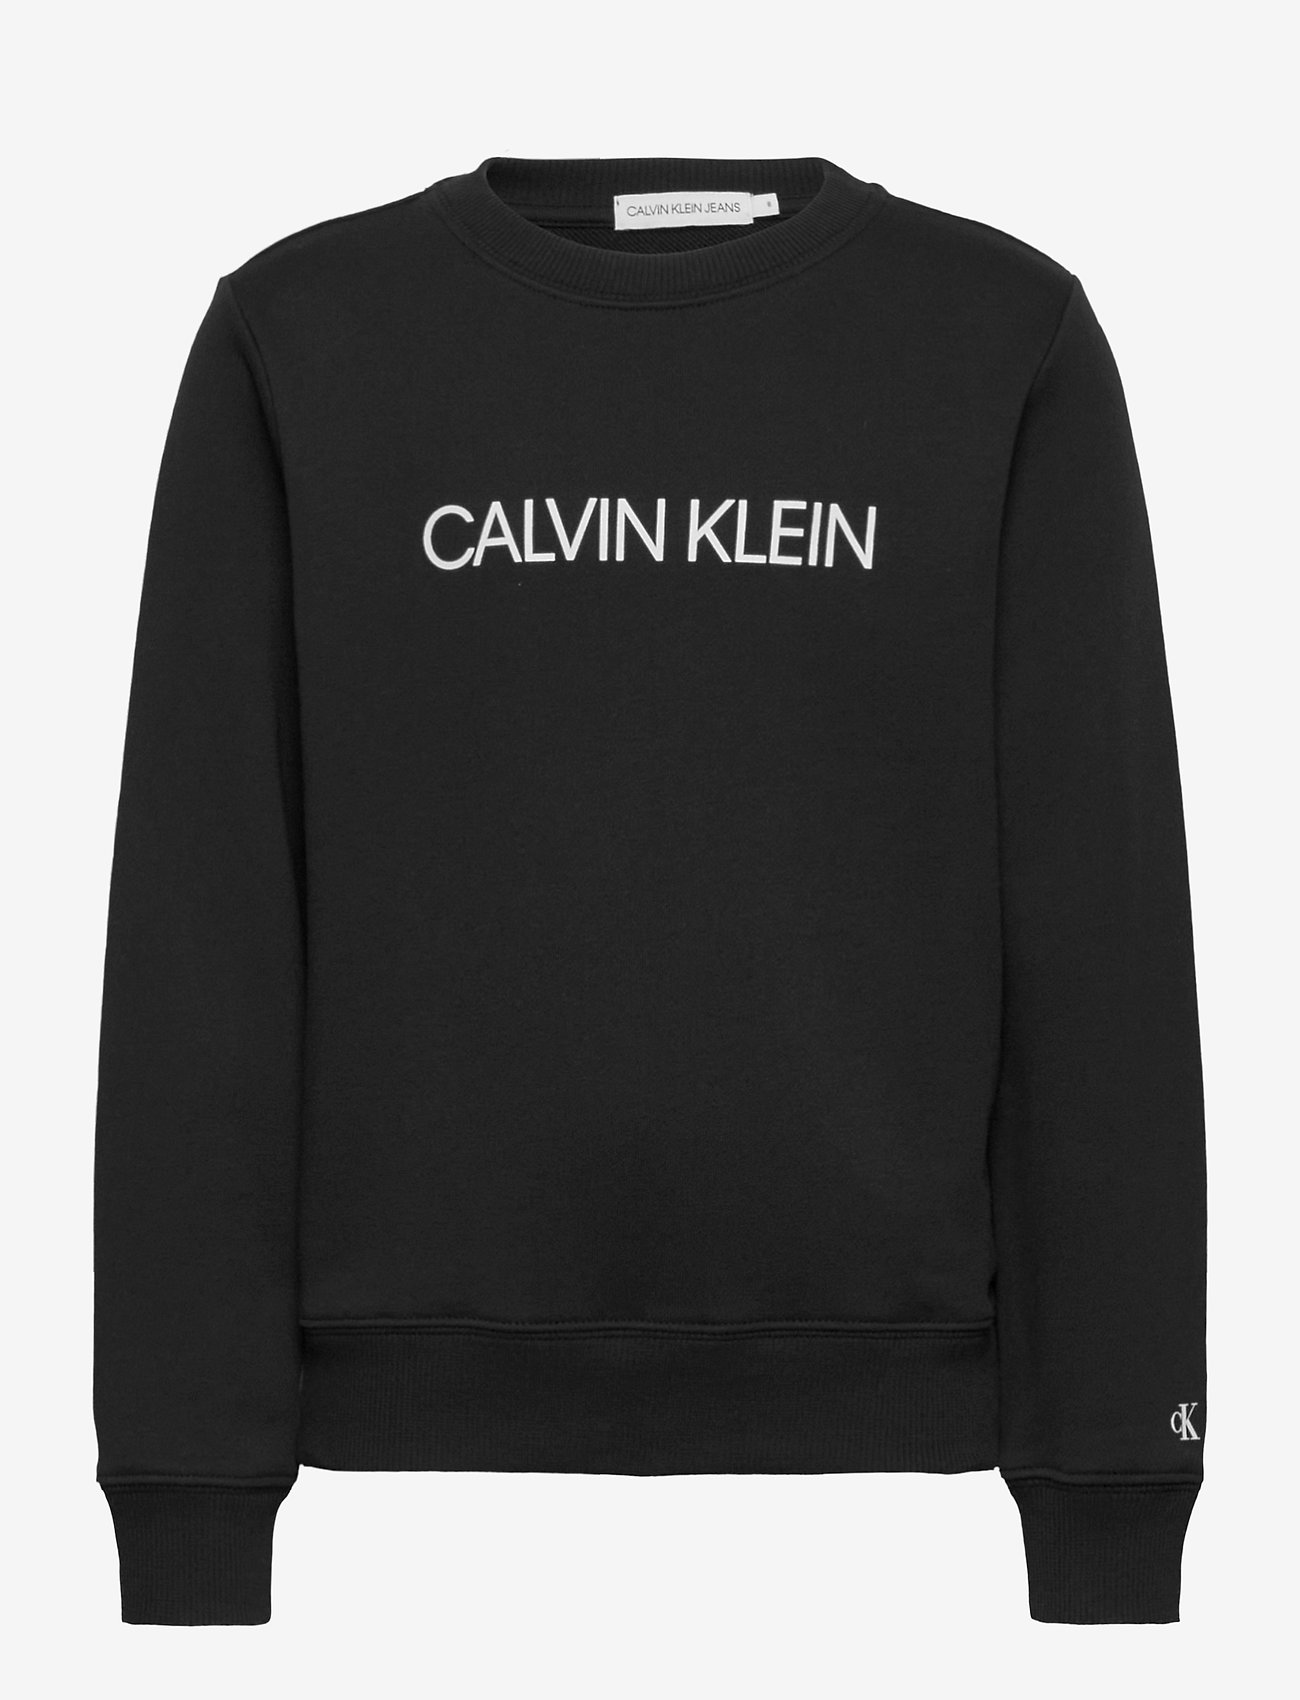 Calvin Klein - INSTITUTIONAL LOGO SWEATSHIRT - ck black - 0